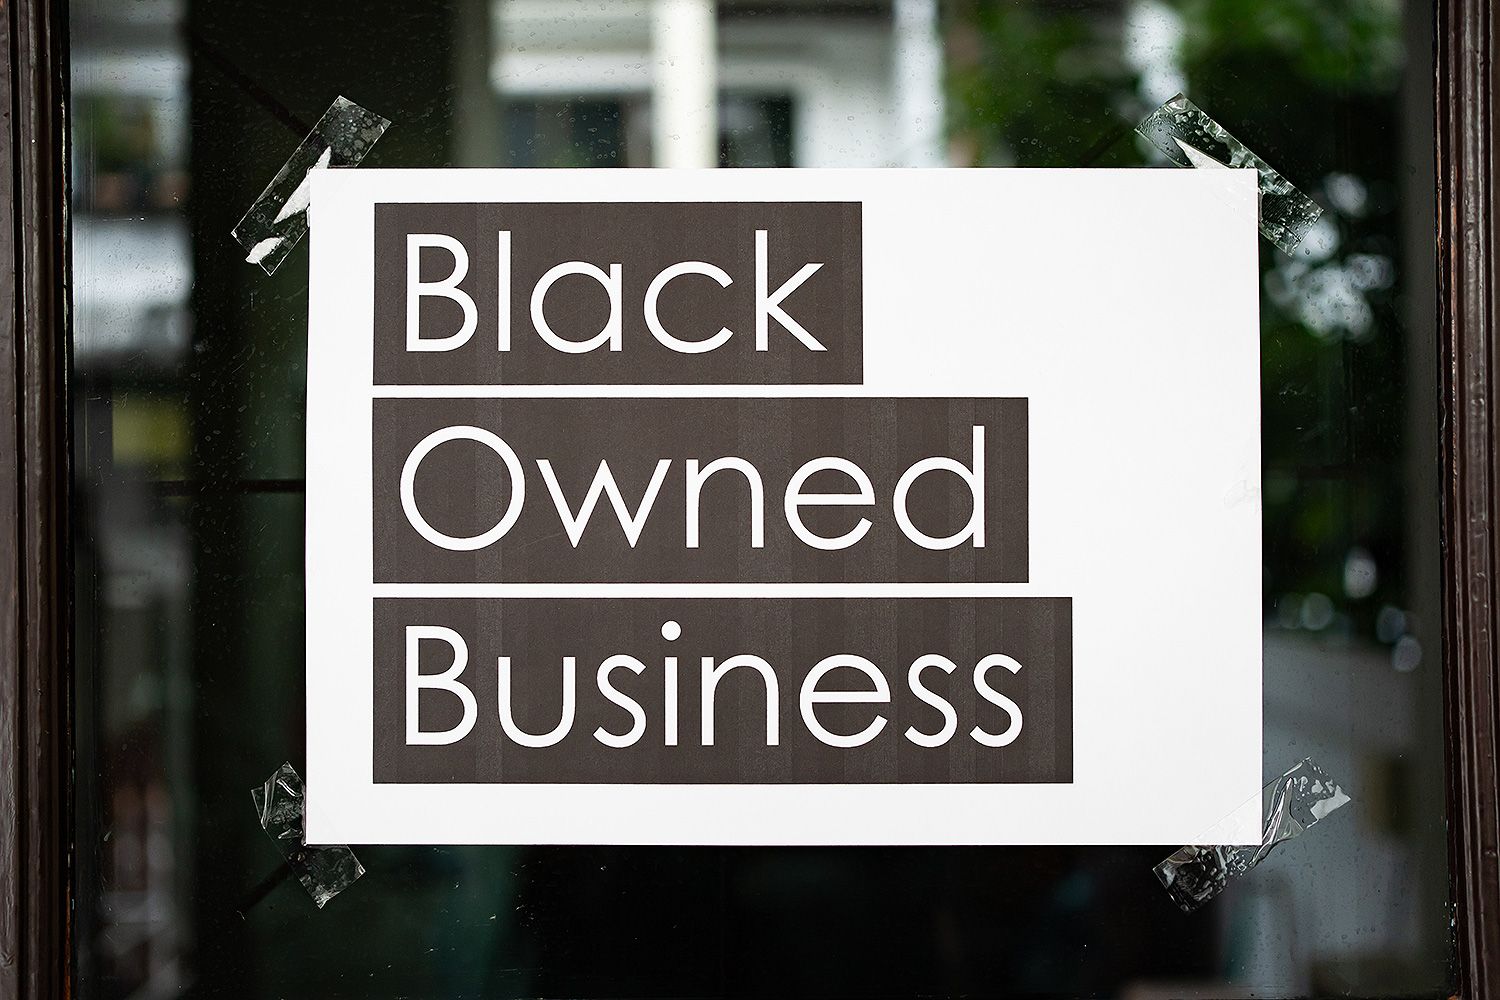 Black-owned-businesses.jpg